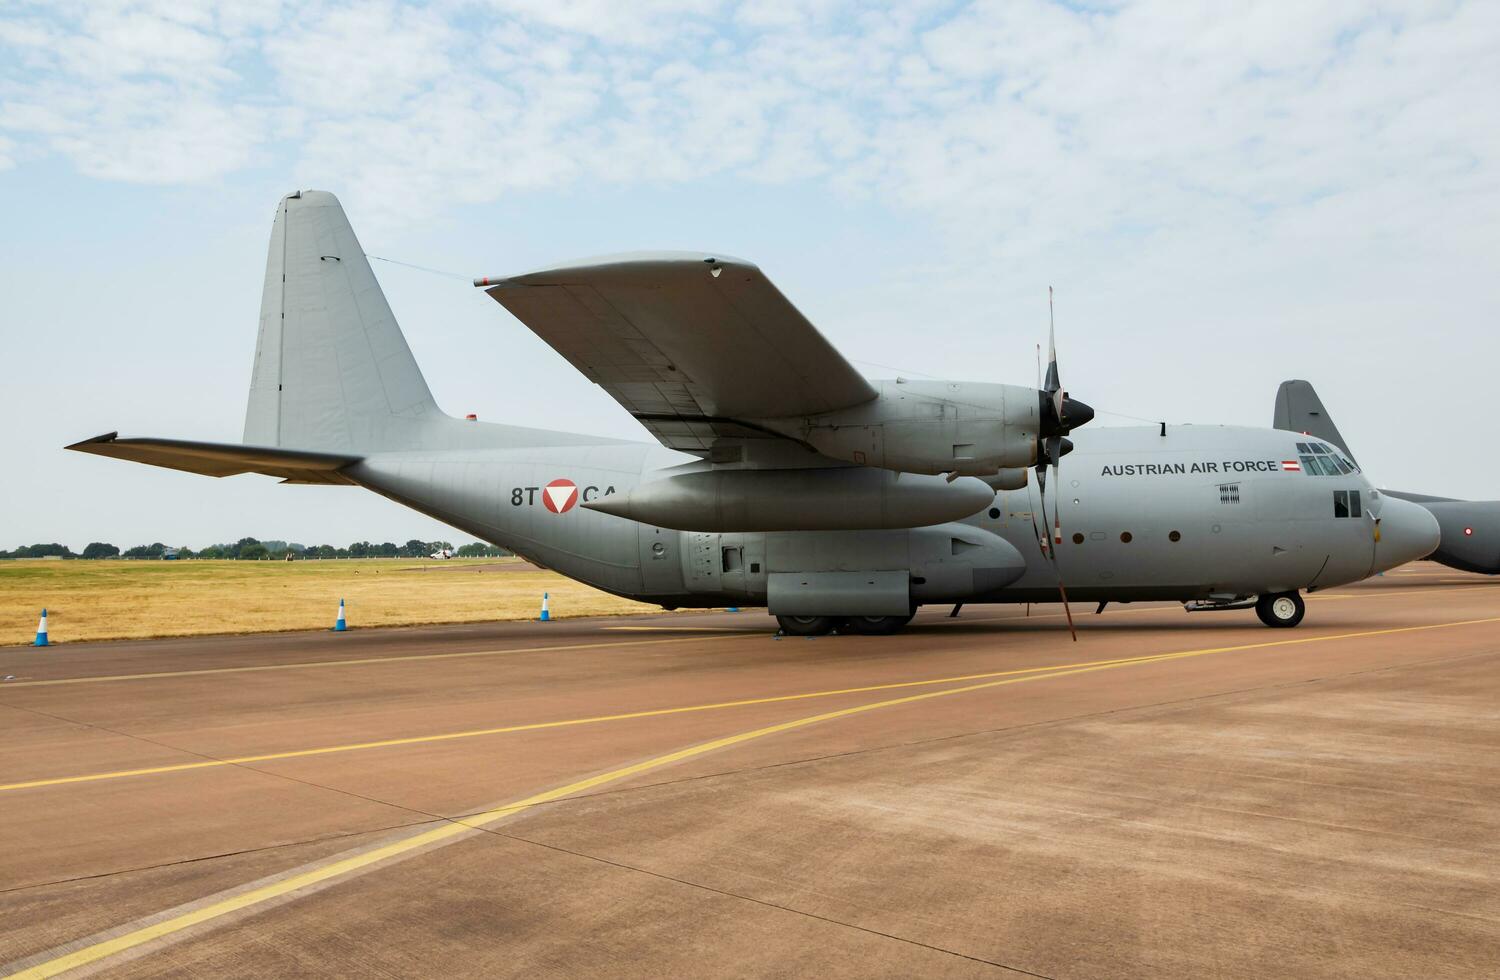 oostenrijks lucht dwingen lockheed c-130k Hercules vervoer vlak statisch Scherm Bij riat Koninklijk Internationale lucht tatoeëren 2018 luchtshow foto